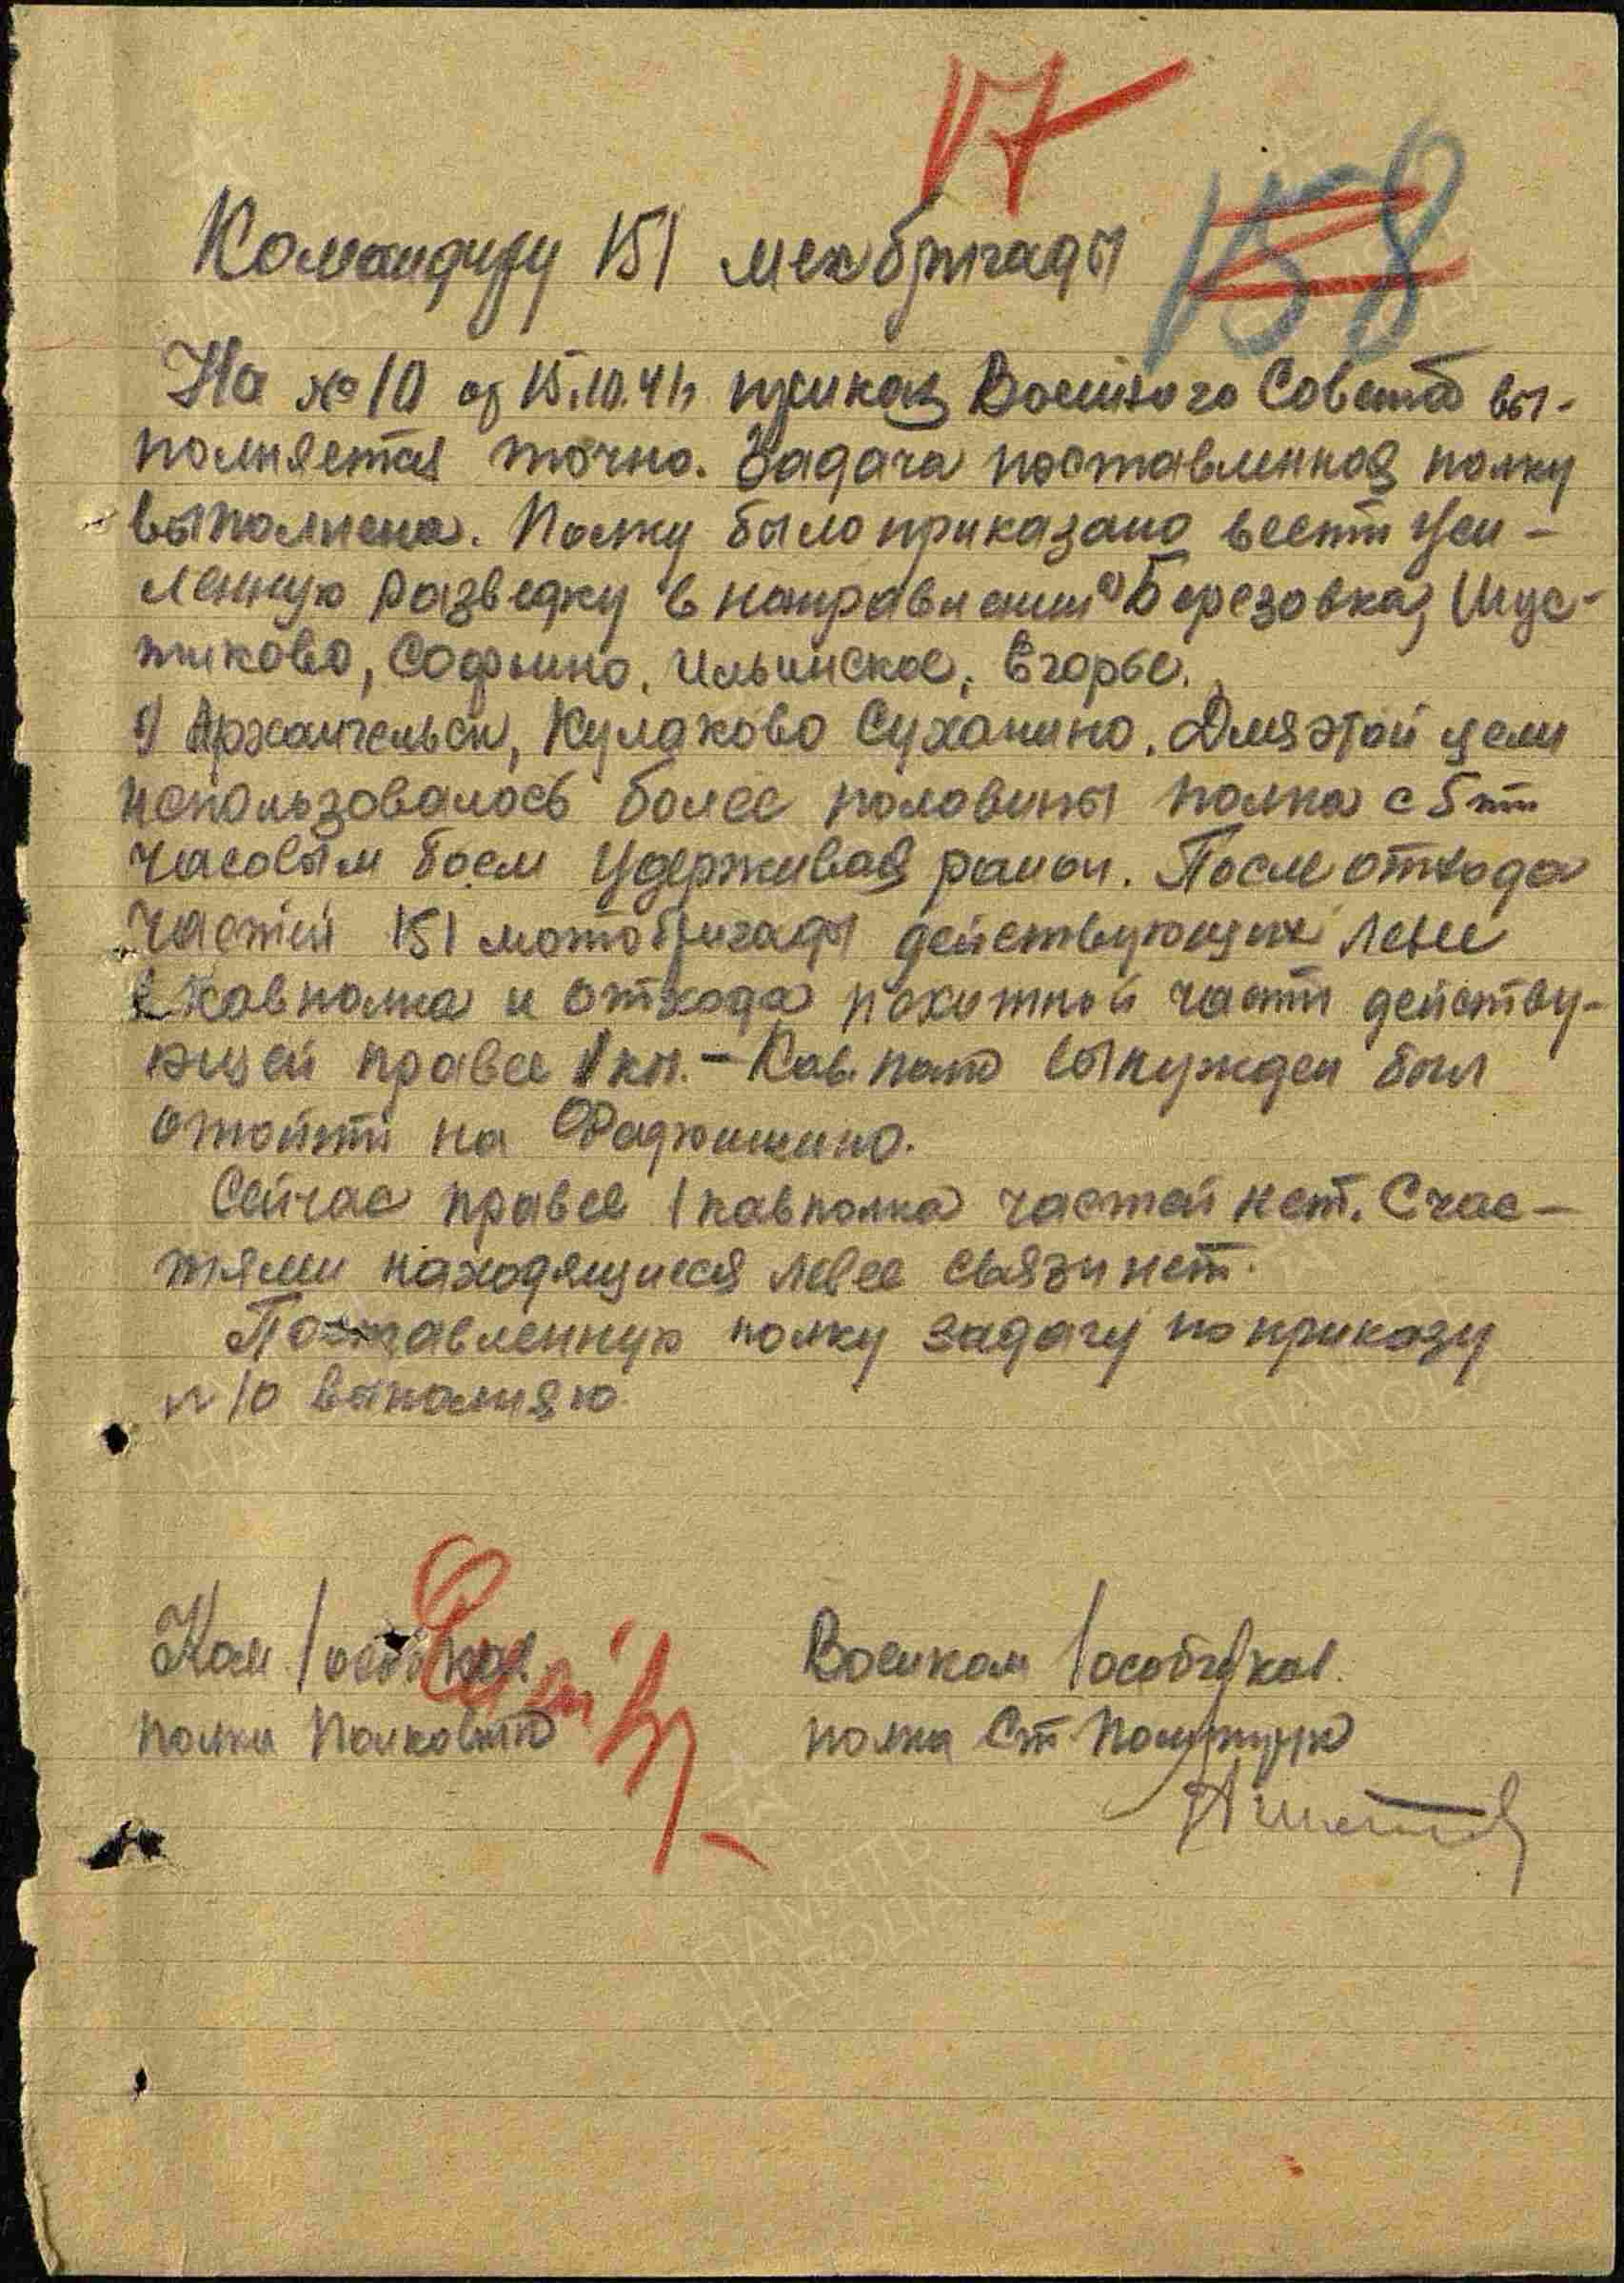 Боевое донесение командира особого кавполка полковника М.Шаймуратова от 15.10.1941 г. «Поставленную полку задачу по приказу №10 выполняю».